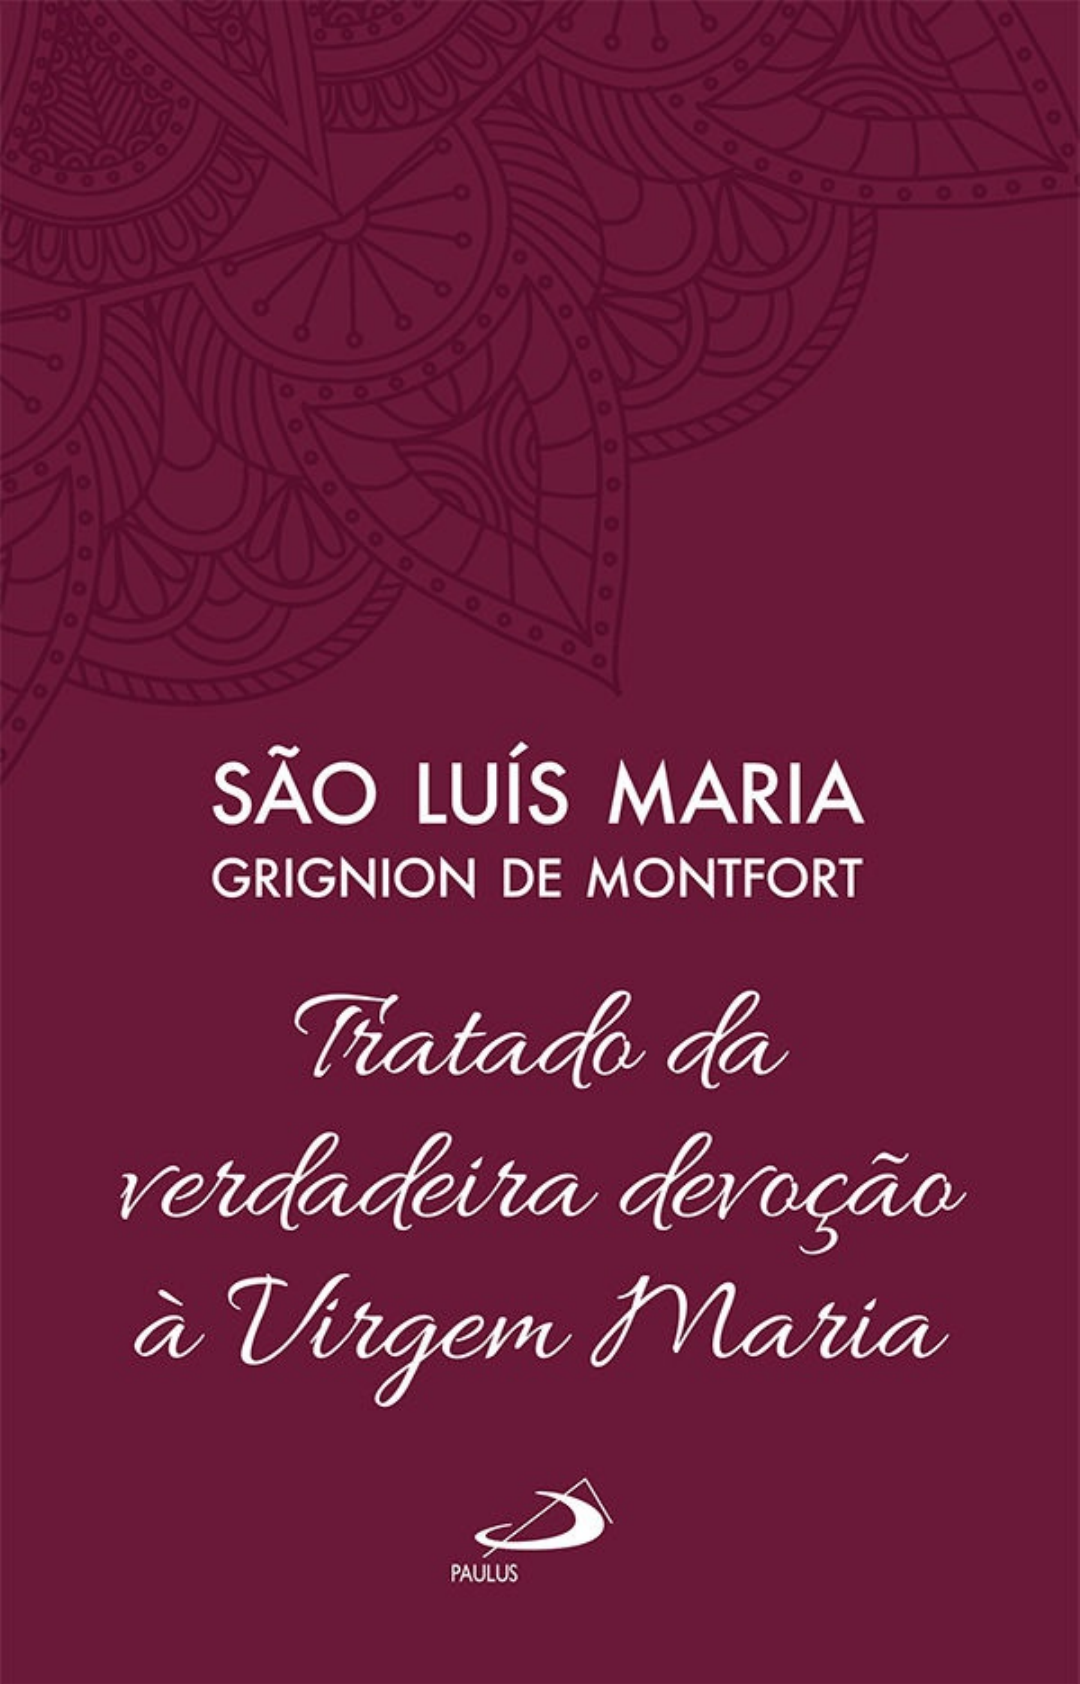 Sao Luiz Maria de Montfort - Oracao Abrasada, PDF, Maria, mãe de Jesus